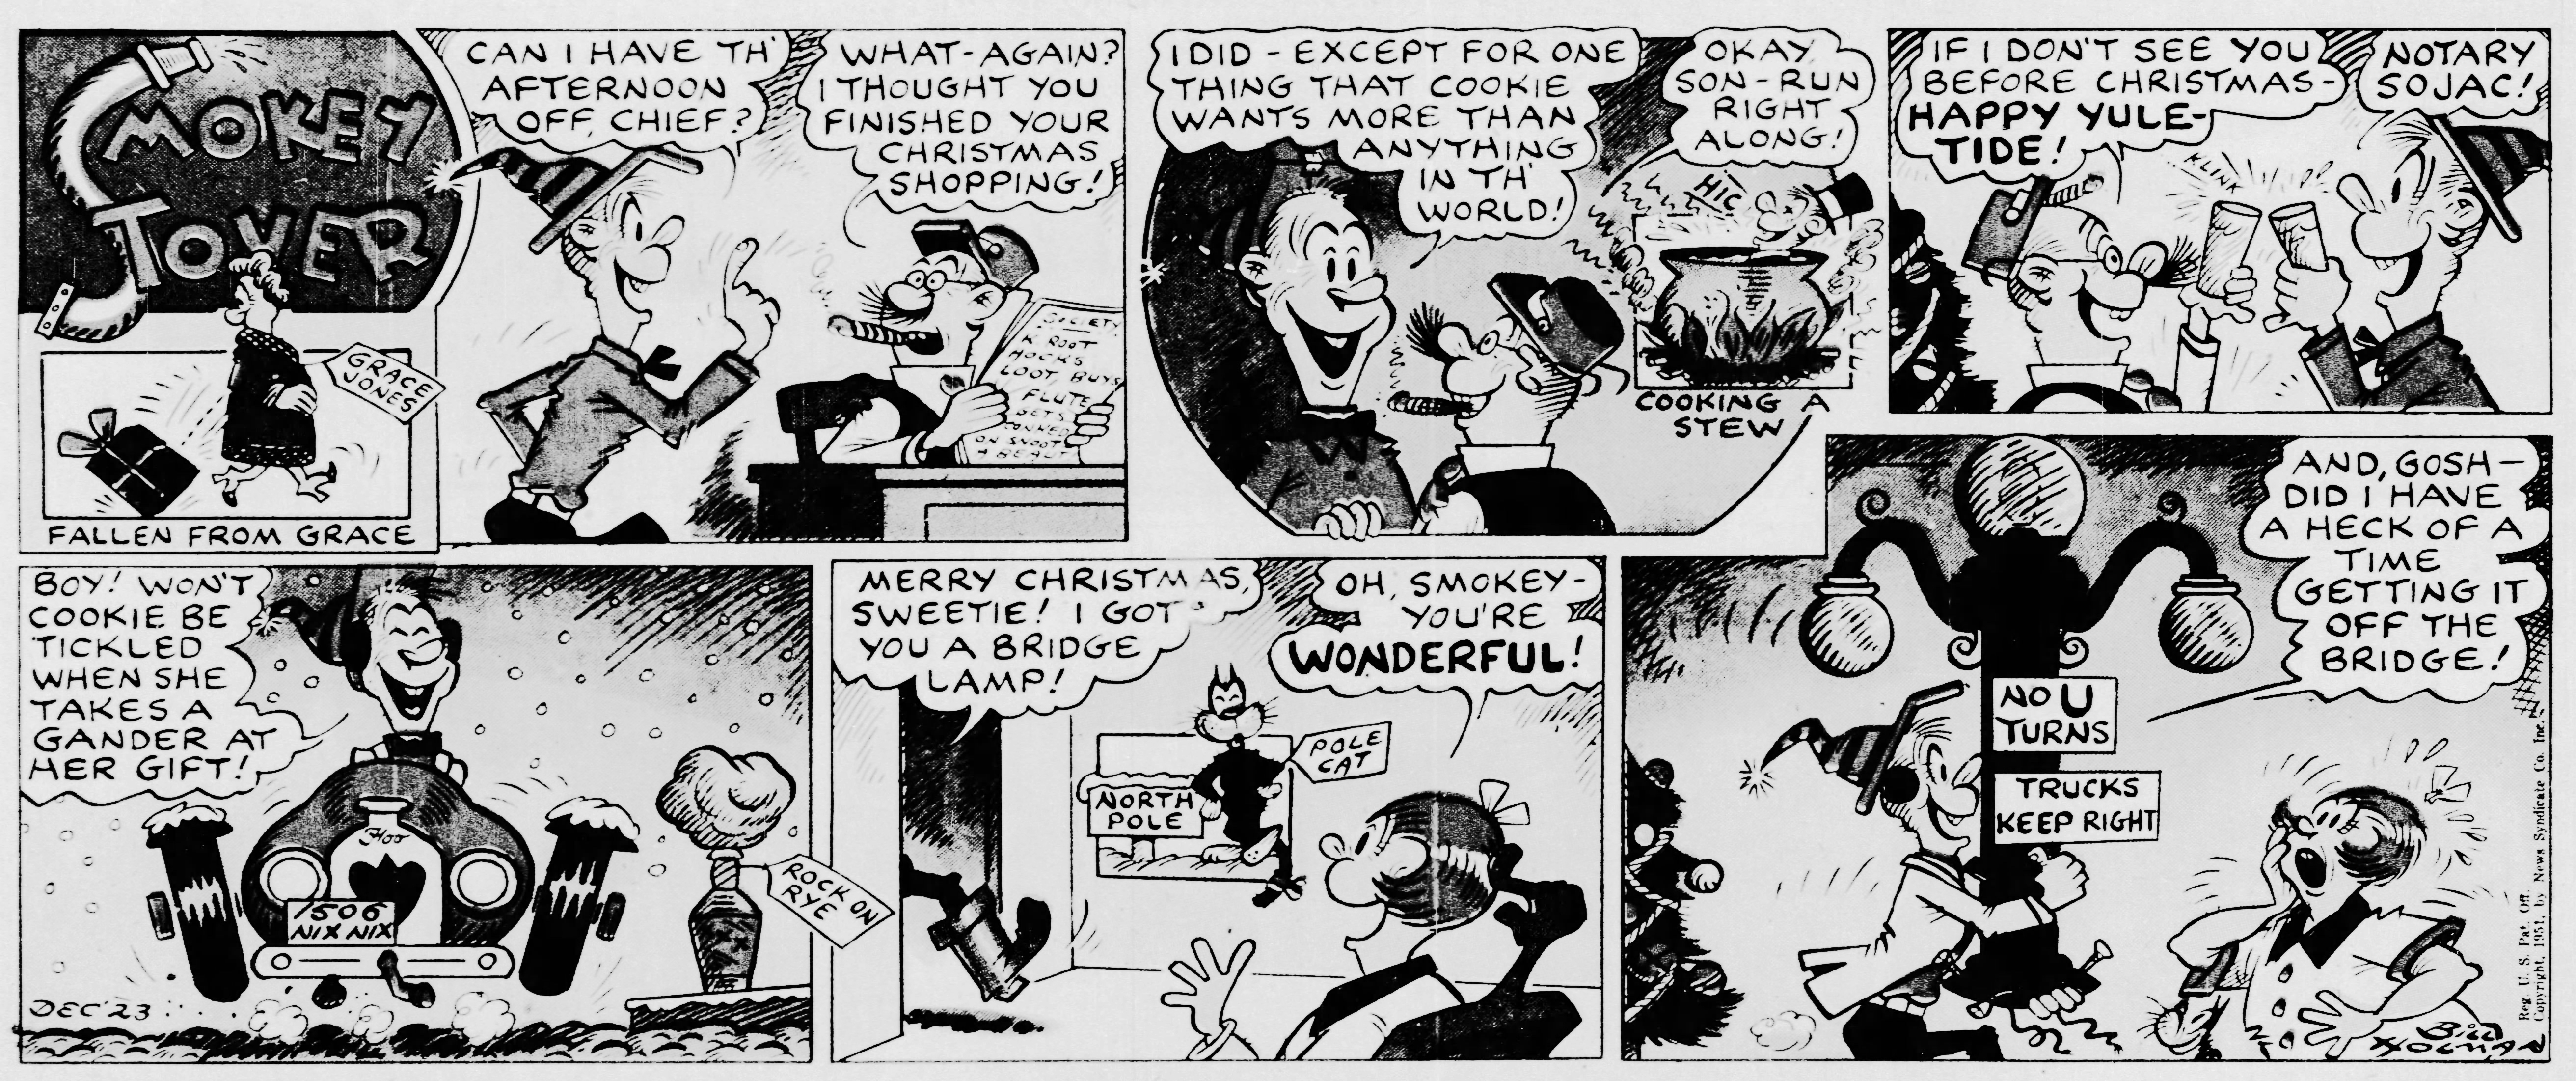 Smokey Stover, December 23, 1951